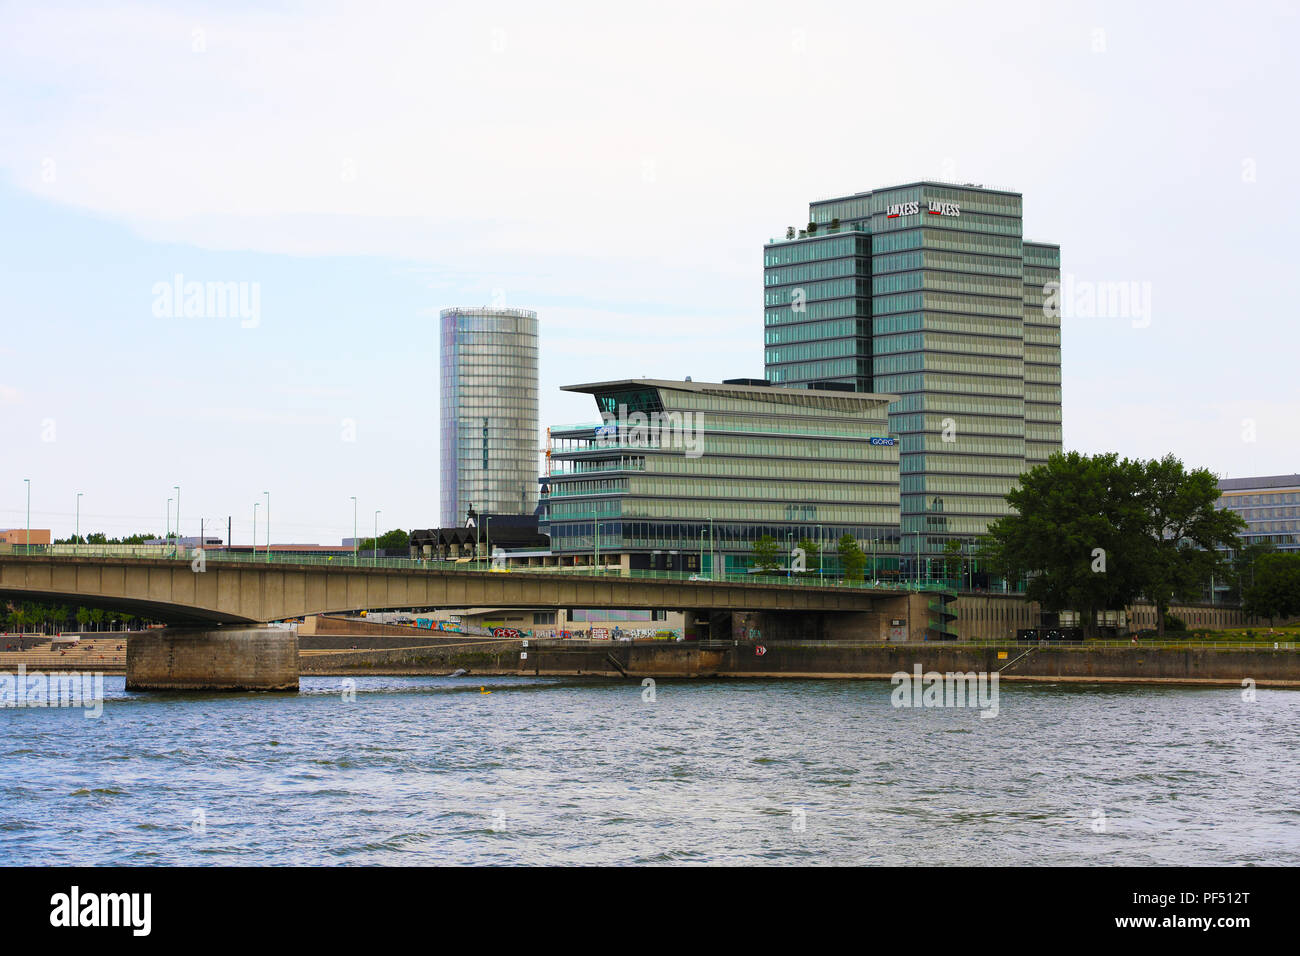 Colonia, Germania - 31 Maggio 2018: ponte Deutzer con moderni grattacieli a Colonia, Germania Foto Stock